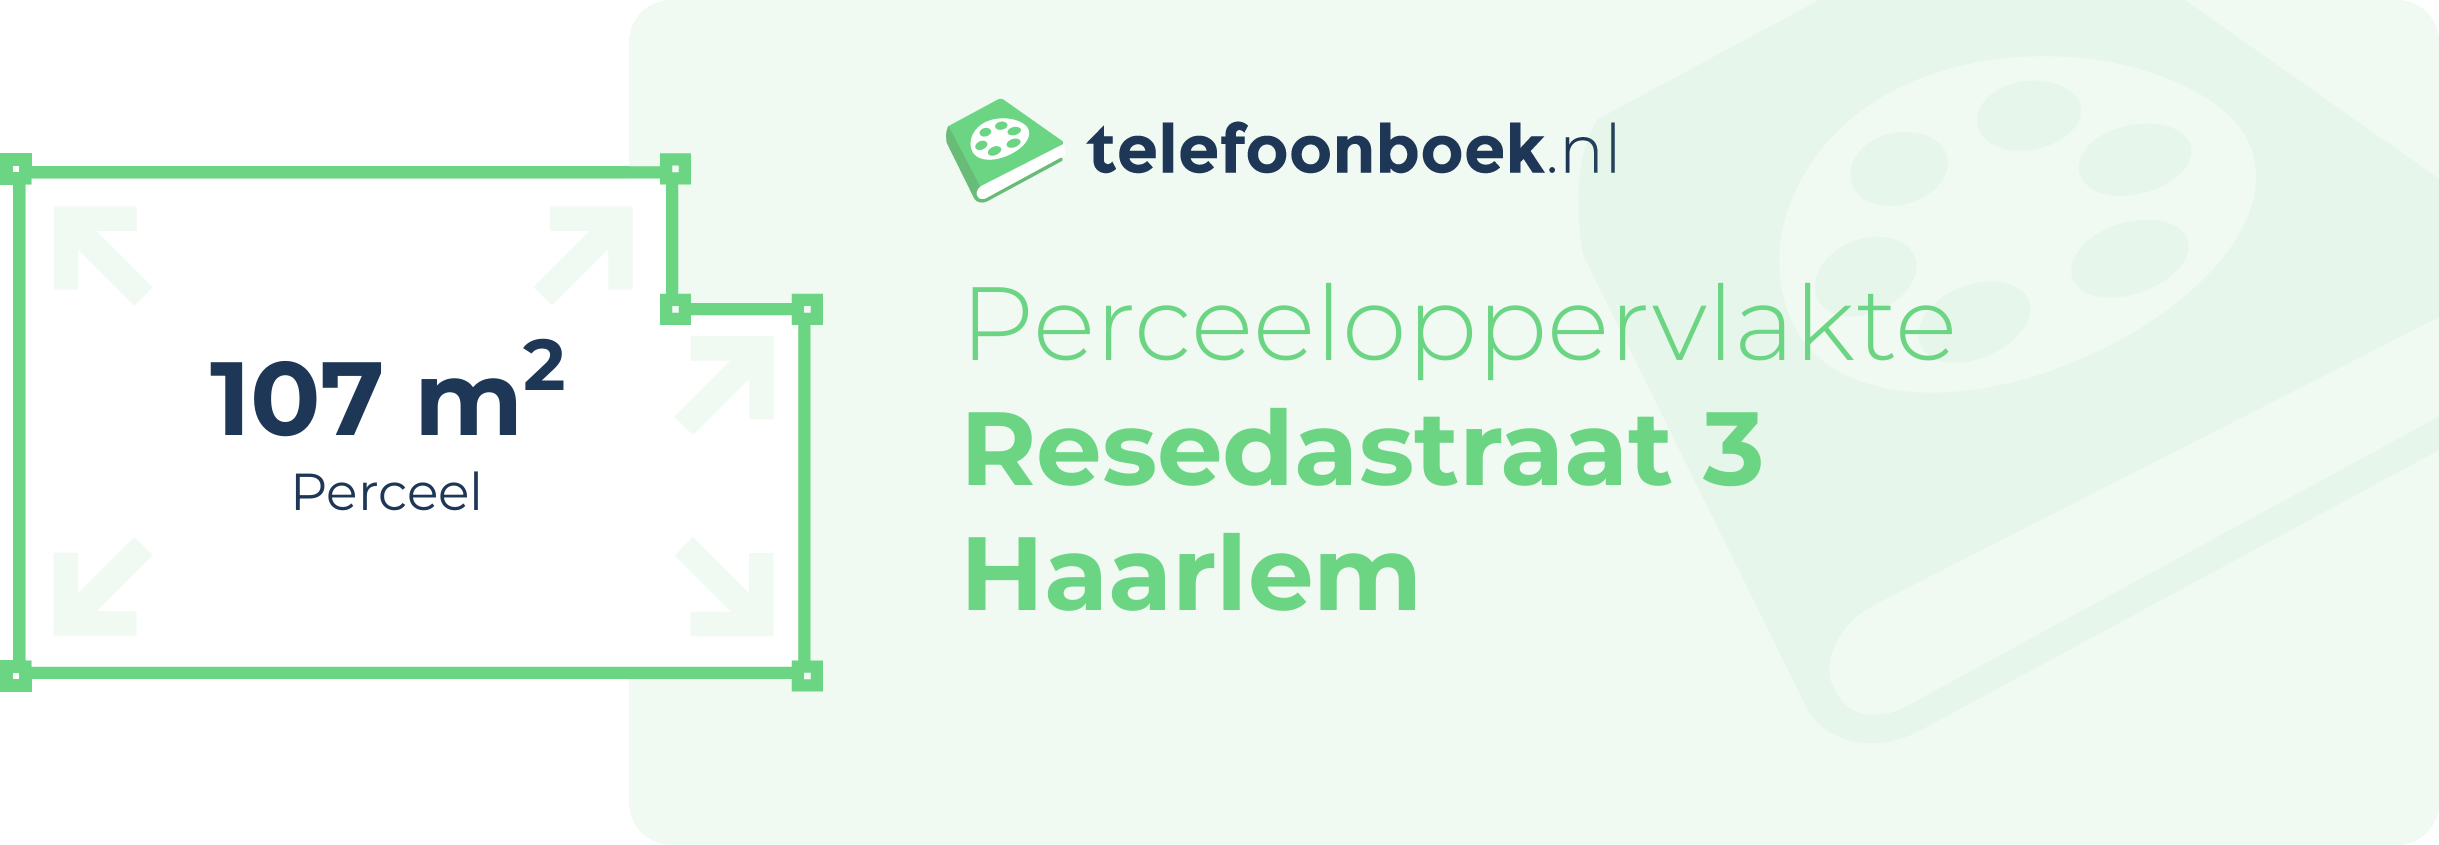 Perceeloppervlakte Resedastraat 3 Haarlem